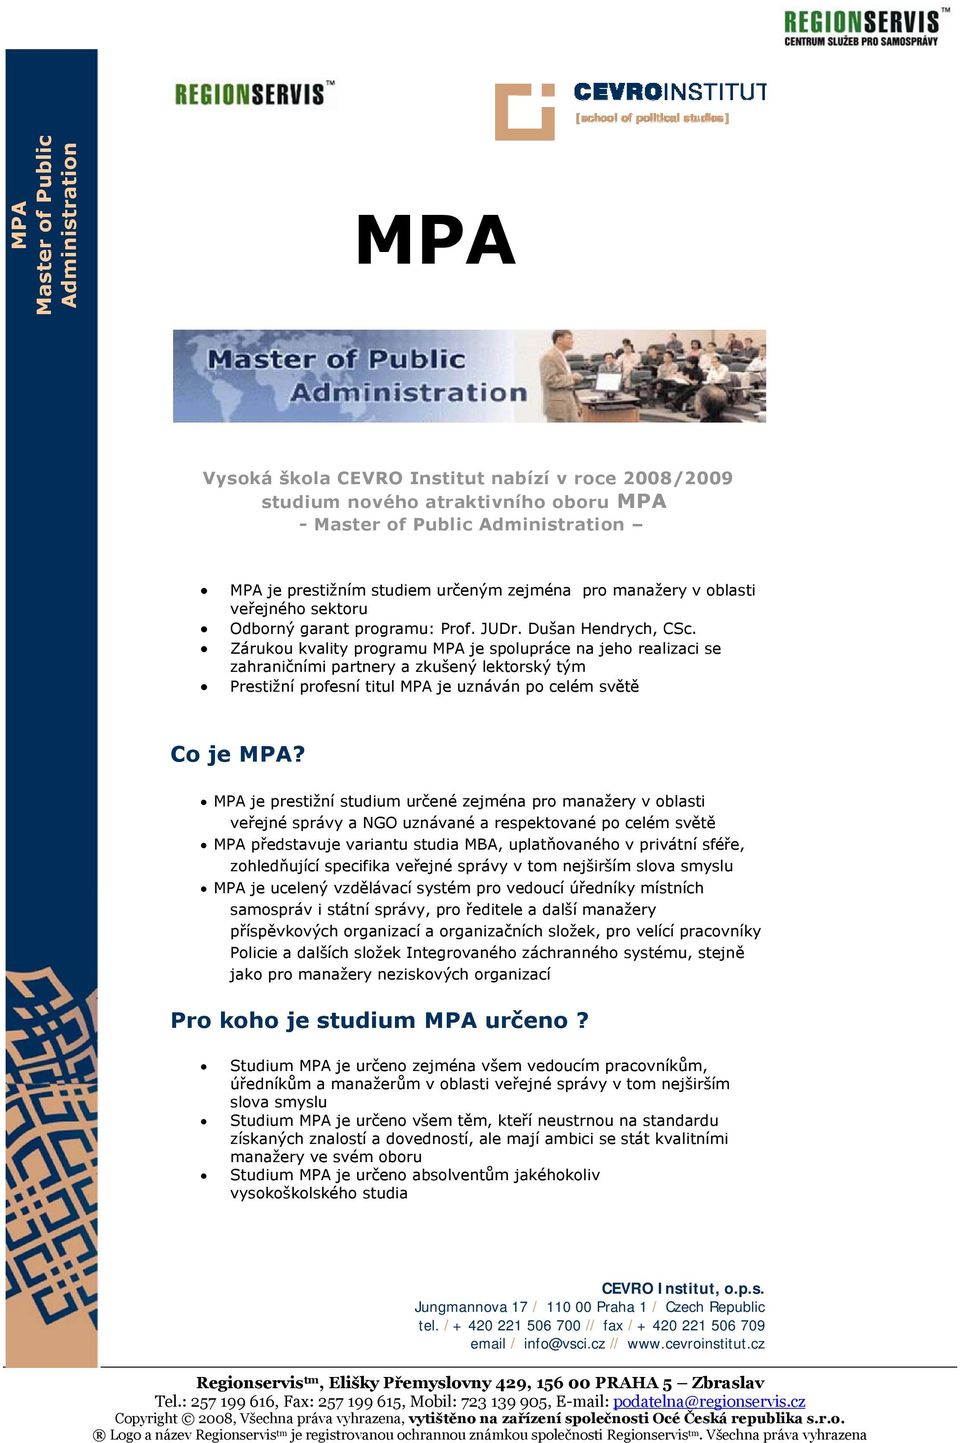 Zárukou kvality programu MPA je spolupráce na jeho realizaci se zahraničními partnery a zkušený lektorský tým Prestižní profesní titul MPA je uznáván po celém světě Co je MPA?